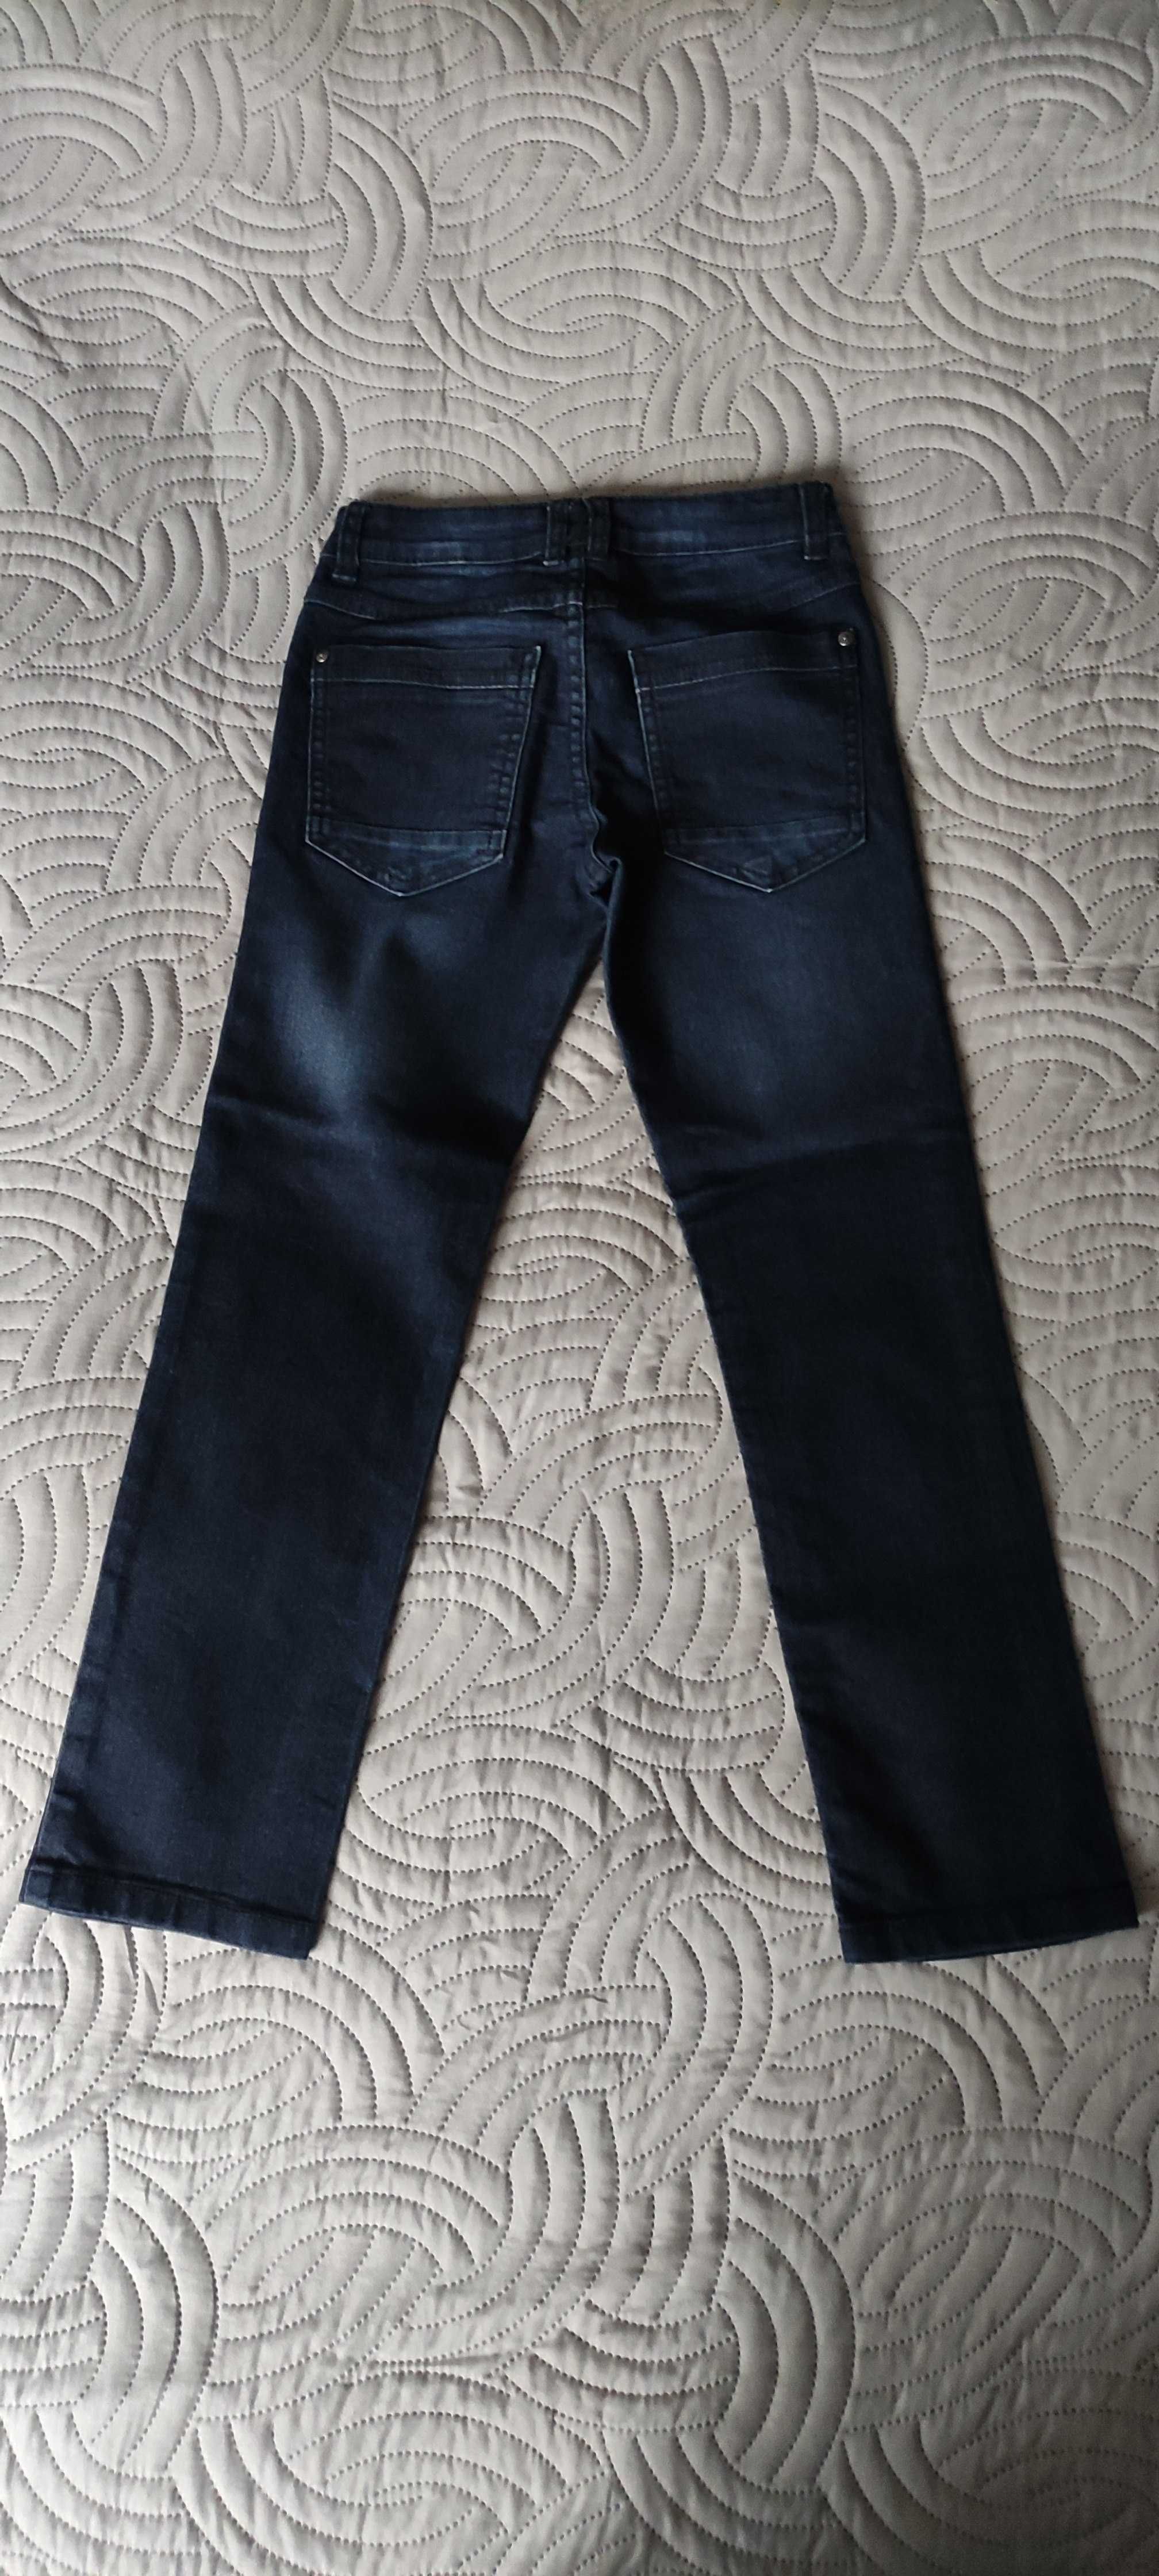 Spodnie jeansowe Pepperts rozmiar 134